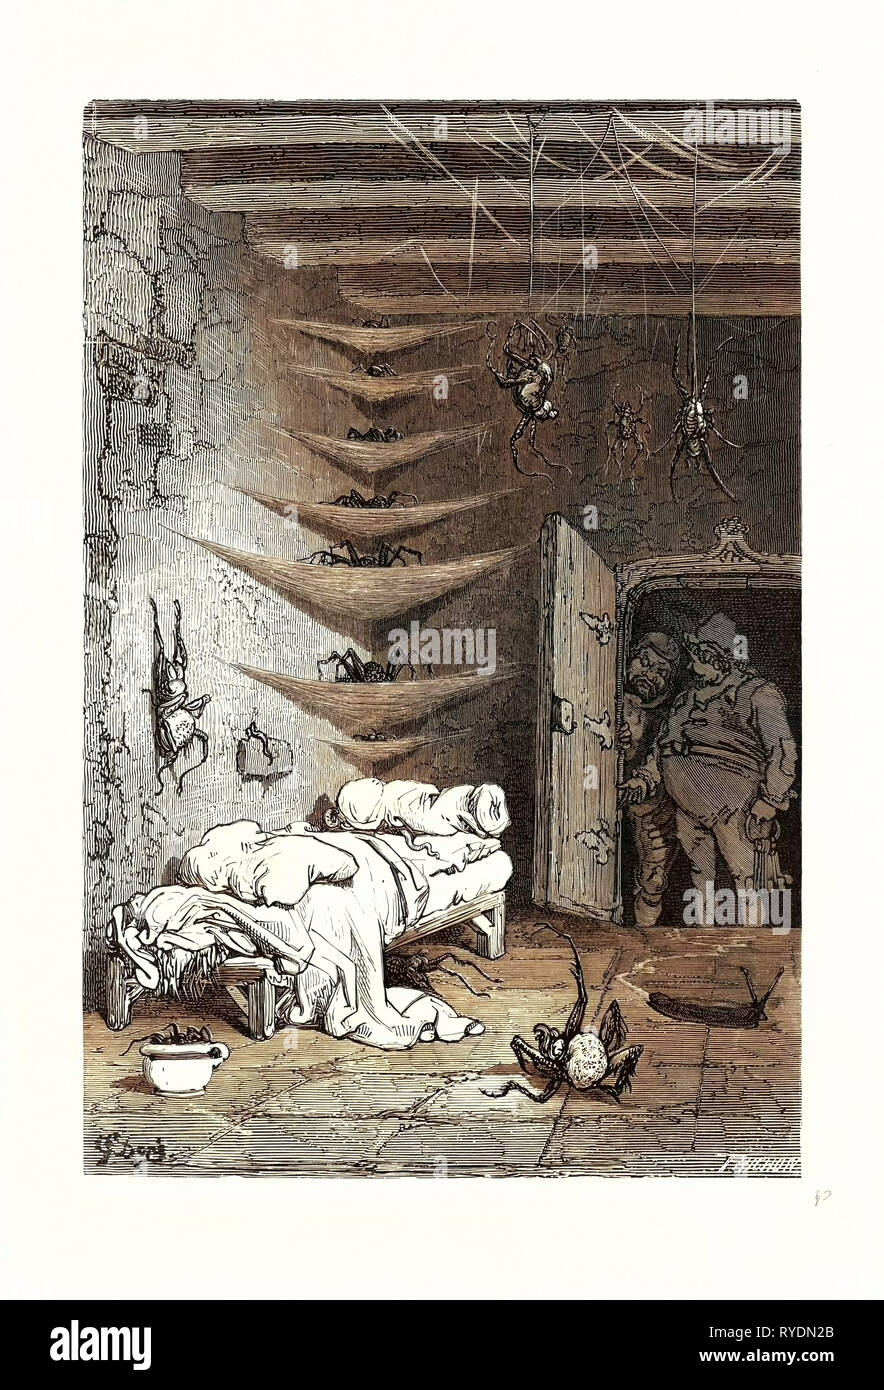 Il letto di ricambio presso il coccodrillo, da Gustave Dore. Una scena dalla leggenda Croquemitaine, da Thomas Hood il giovane. 1832 - 1883, francese, 1870, arte, artista, romanticismo, Colore, incisione a colori Foto Stock